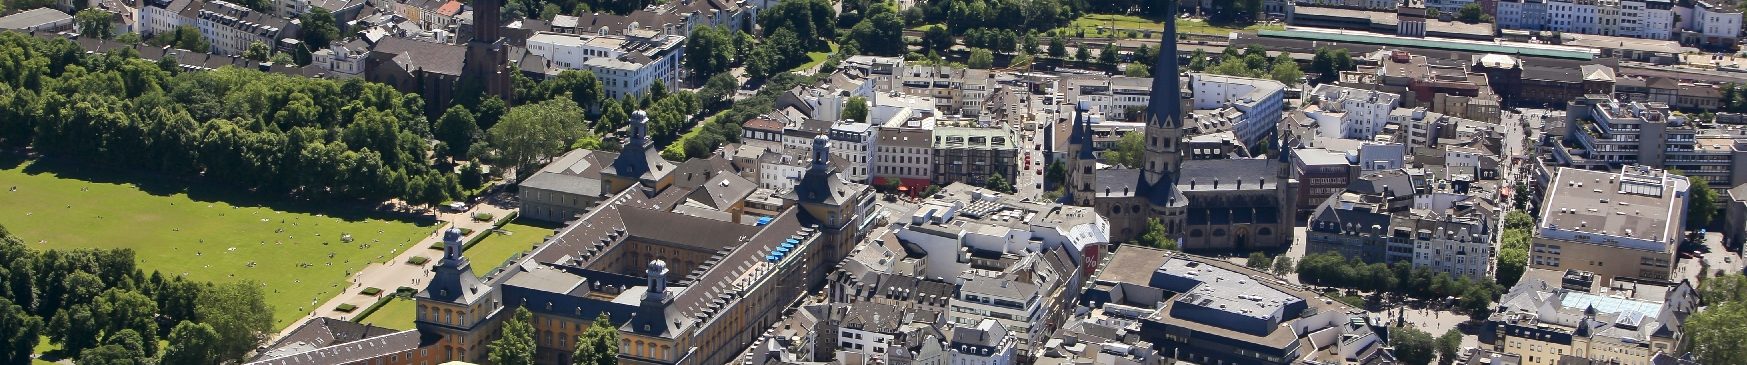 Luftbild der Bonner Innenstadt mit Poppelsdorf